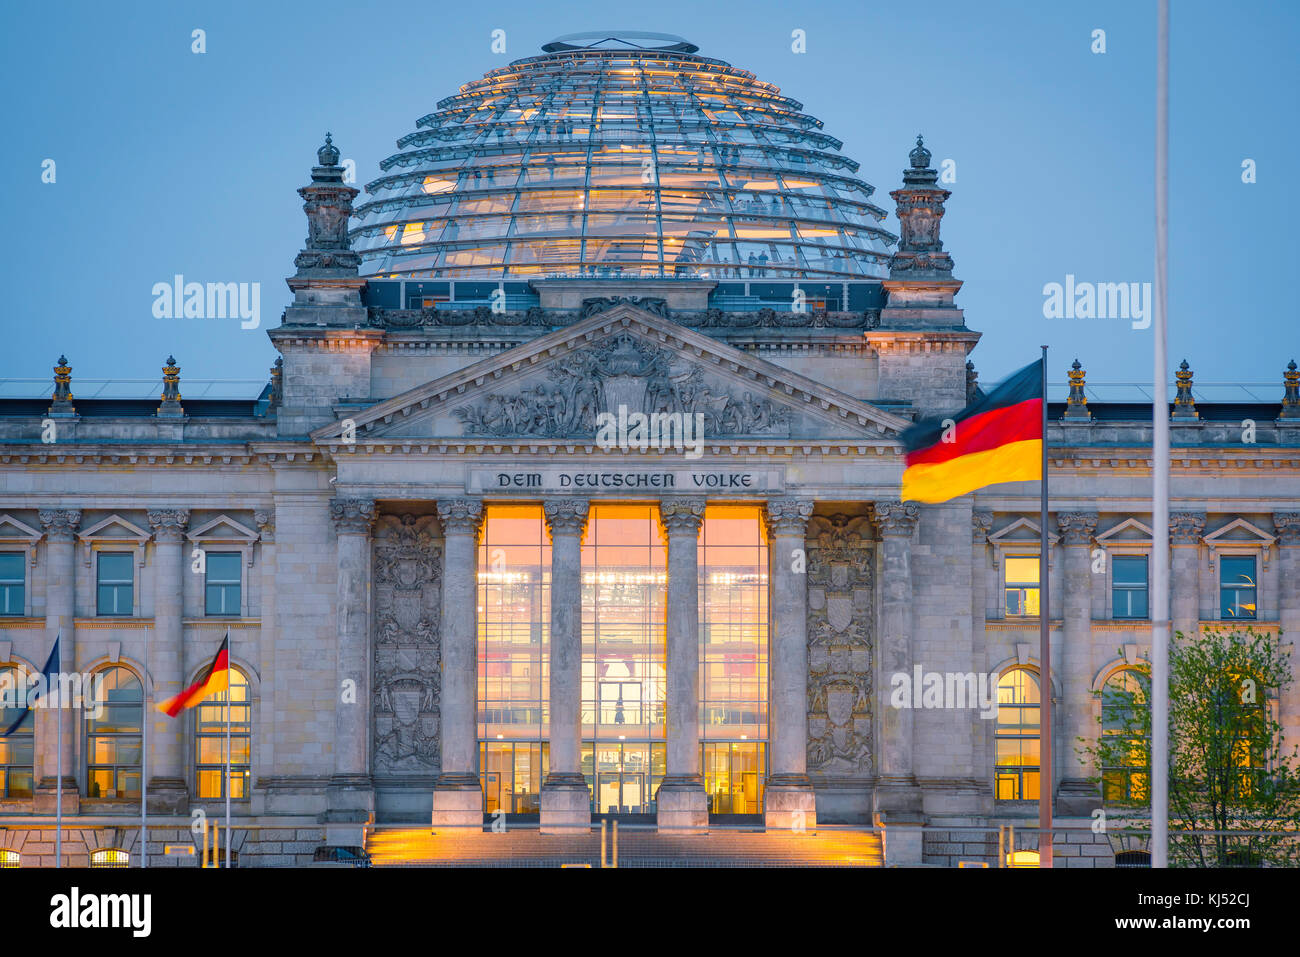 Reichstag Berlin, vue au crépuscule de l'extérieur du bâtiment du parlement du Reichstag avec son dôme en verre et son atrium éclairé, Berlin, Allemagne. Banque D'Images